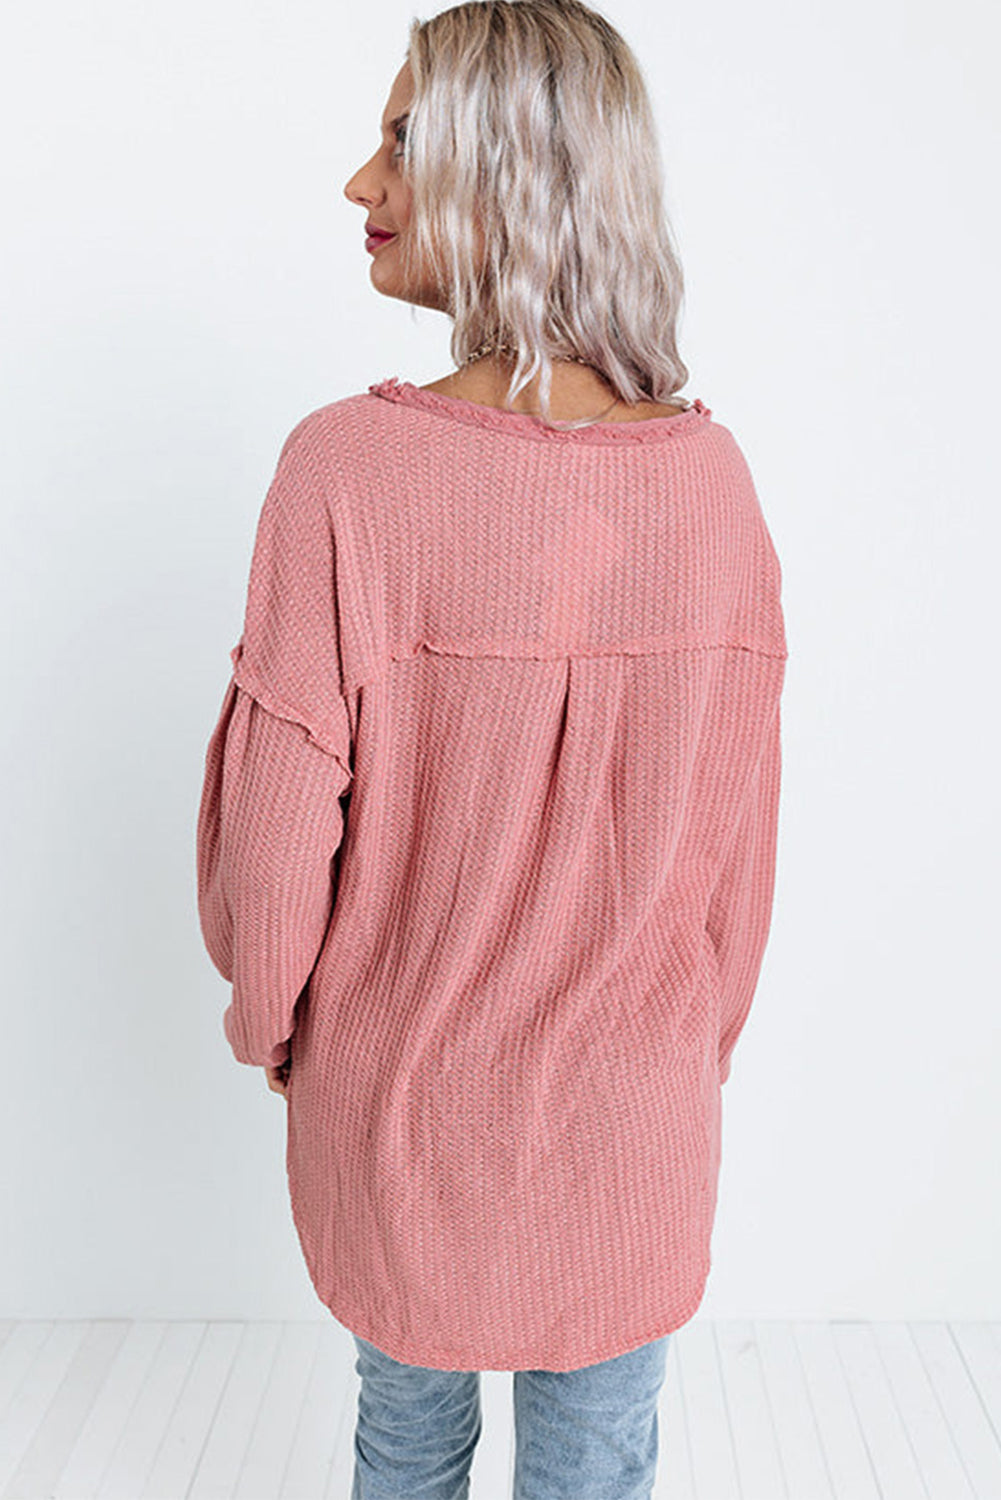 Rožnata obrabljena pletena majica iz vaflja